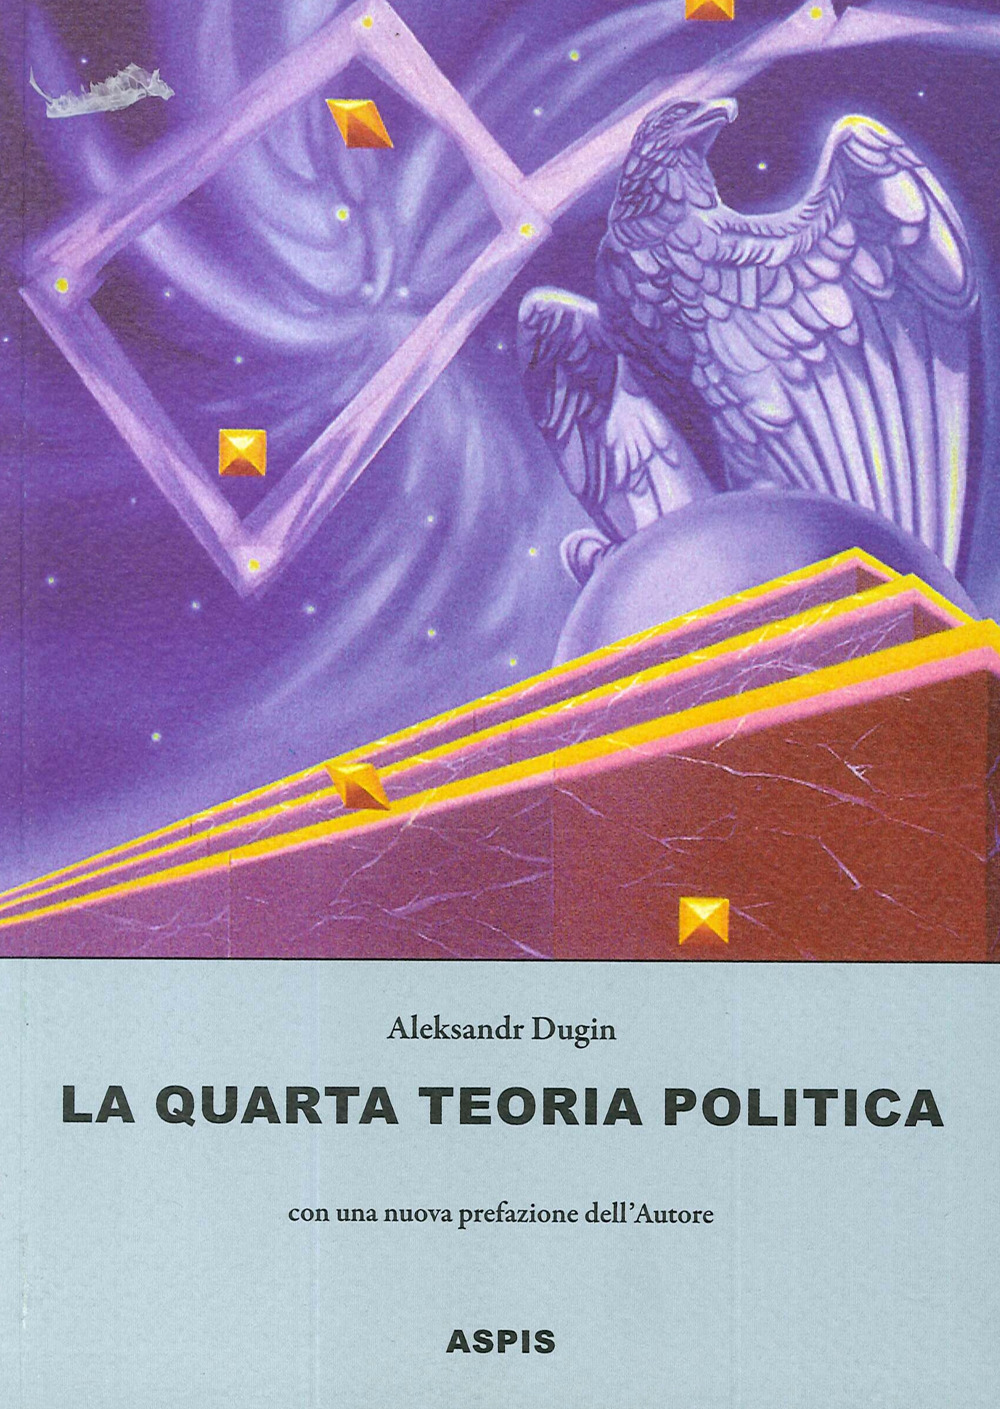 Libri Aleksandr Dugin - La Quarta Teoria Politica NUOVO SIGILLATO, EDIZIONE DEL 09/10/2020 SUBITO DISPONIBILE